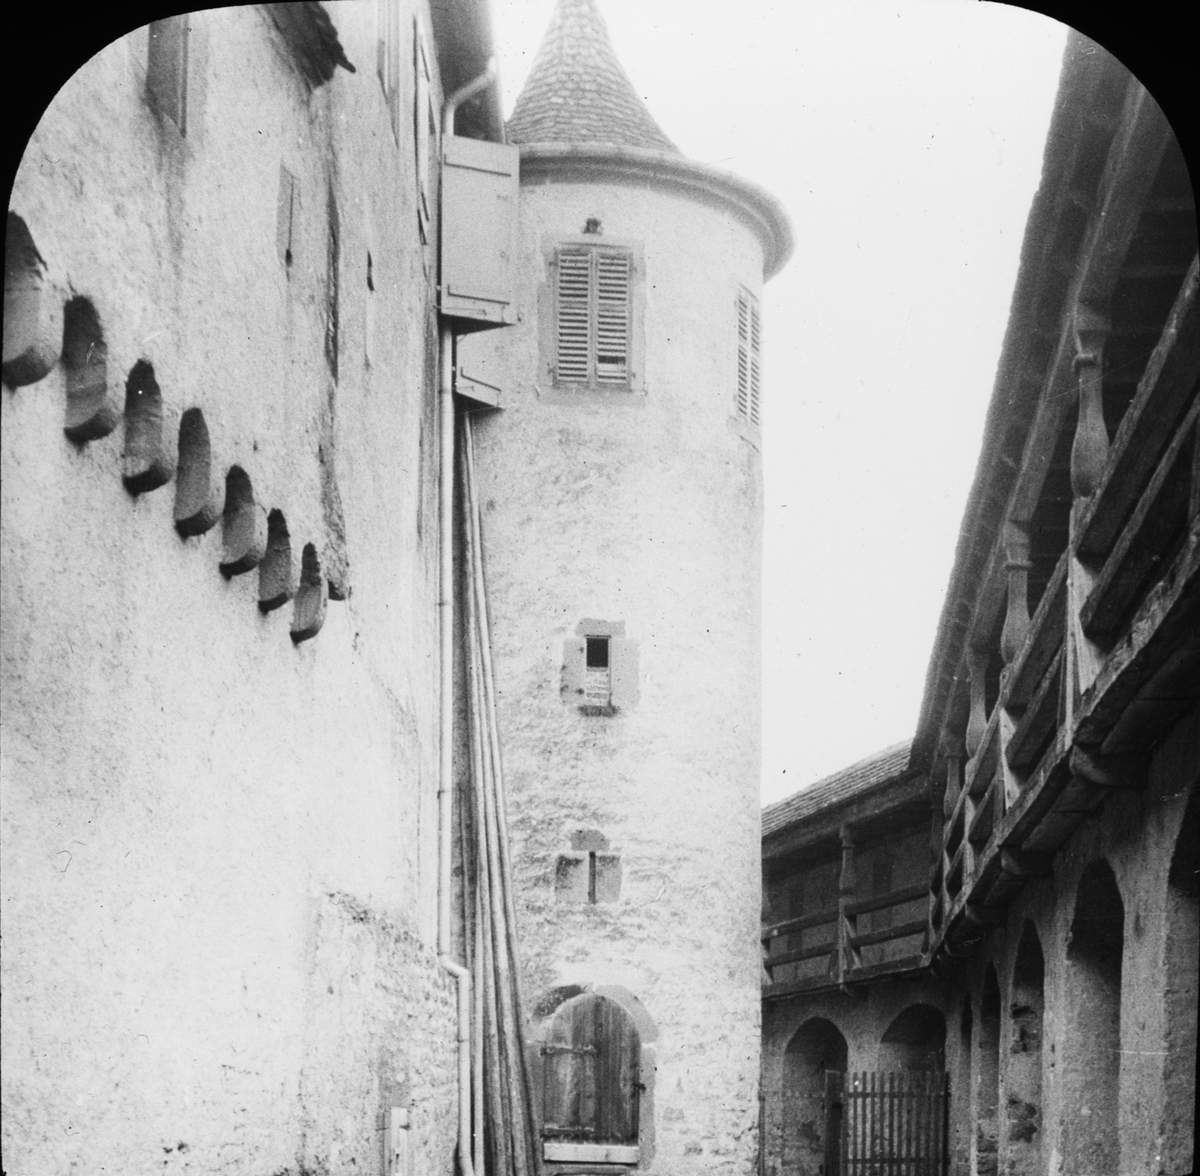 Skioptikonbild med motiv av klostret Comburg.
Bilden har förvarats i kartong märkt: Höstresan 1909. N:25. Text på bild: "Schloss Komburg. Whergang".